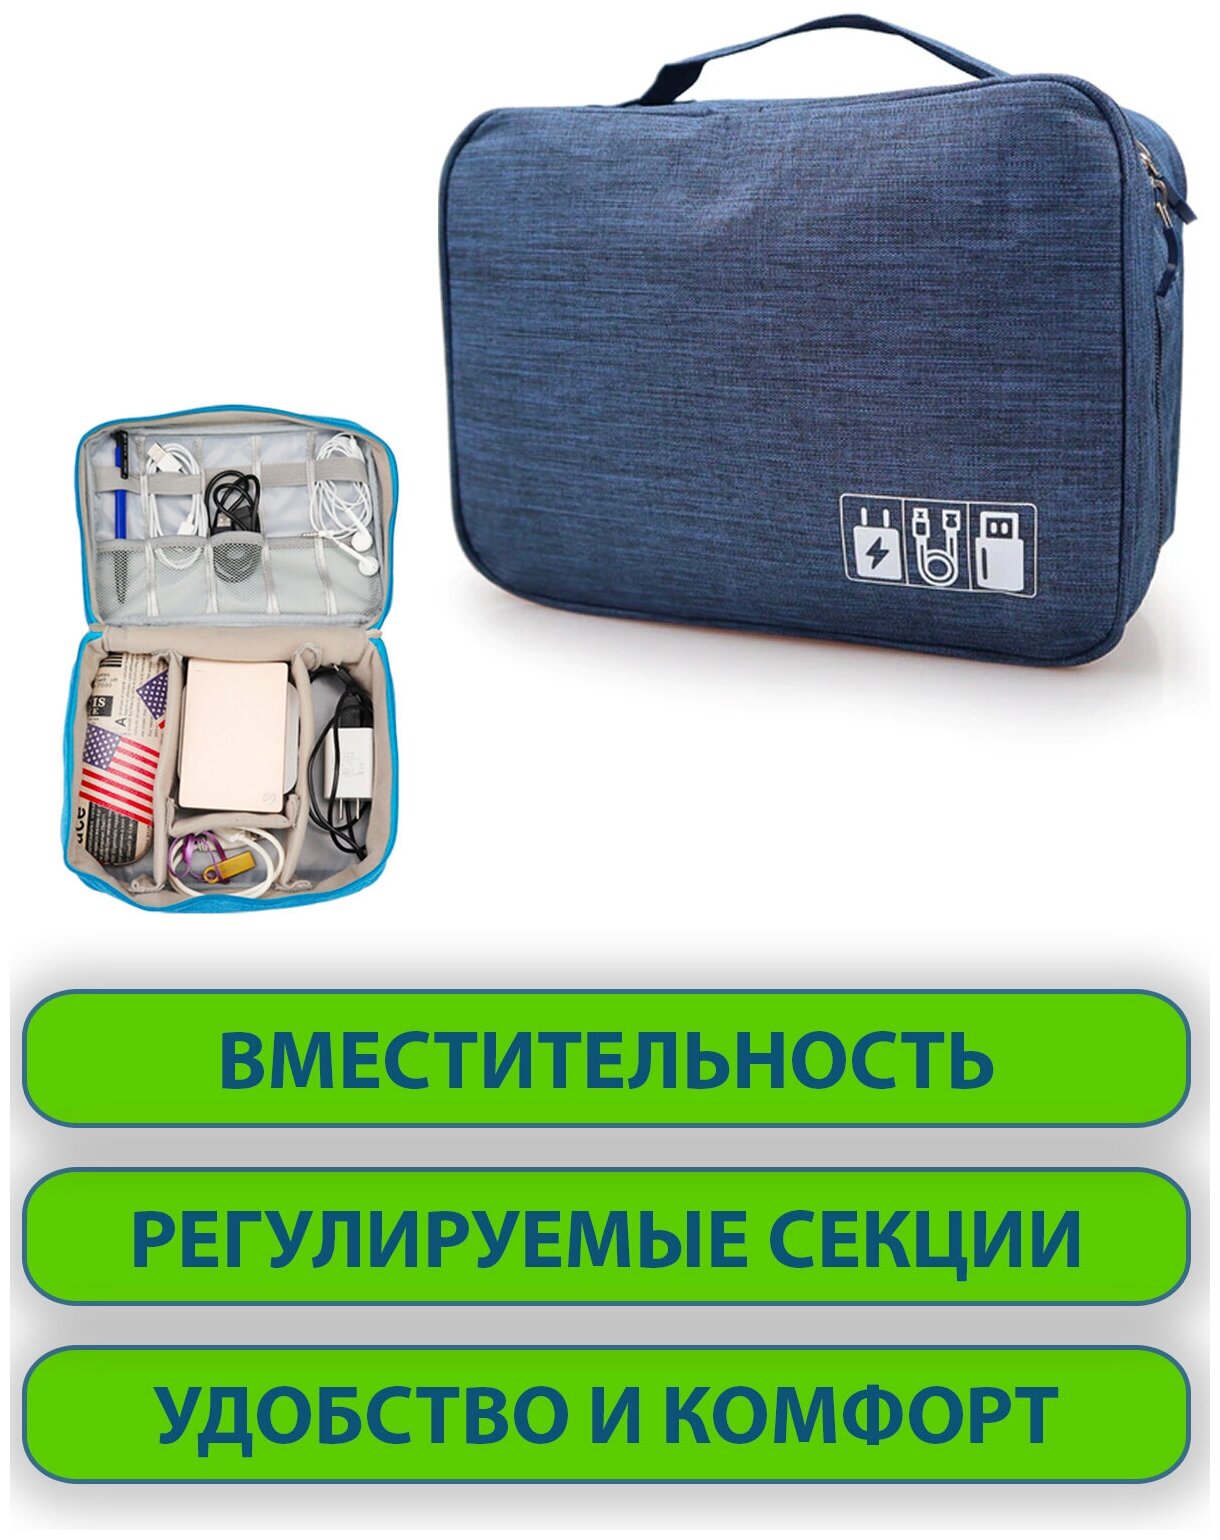 Органайзер дорожная сумка для хранения вещей, косметики и аксессуаров для телефона для путешествий и в багажник автомобиля, синий